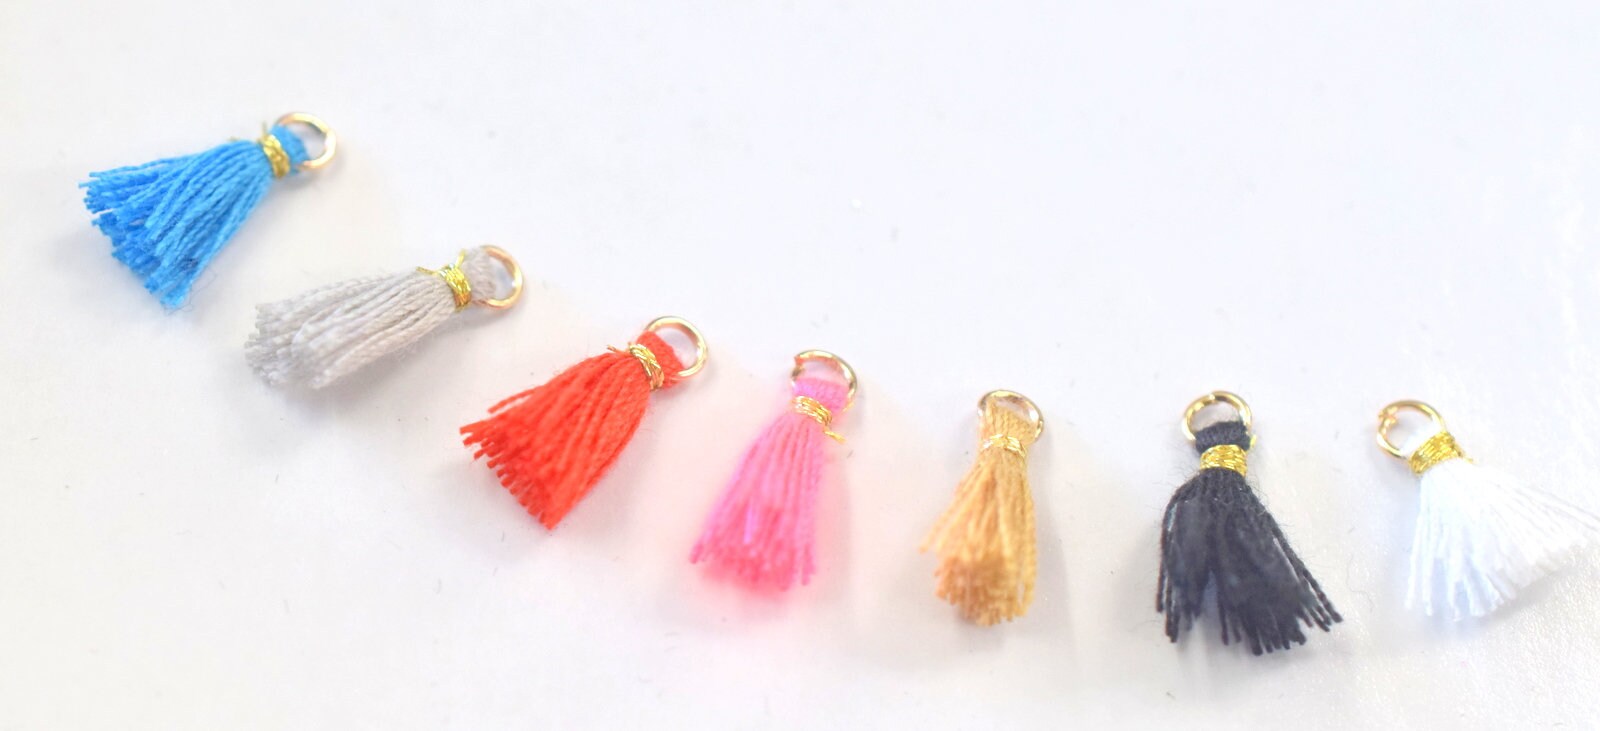 12mm Tassel DIY Projects jewelry tassel, Handmade NylonThread Tassel/Craft Tassel/Tassel Pendant For Jewelry Making